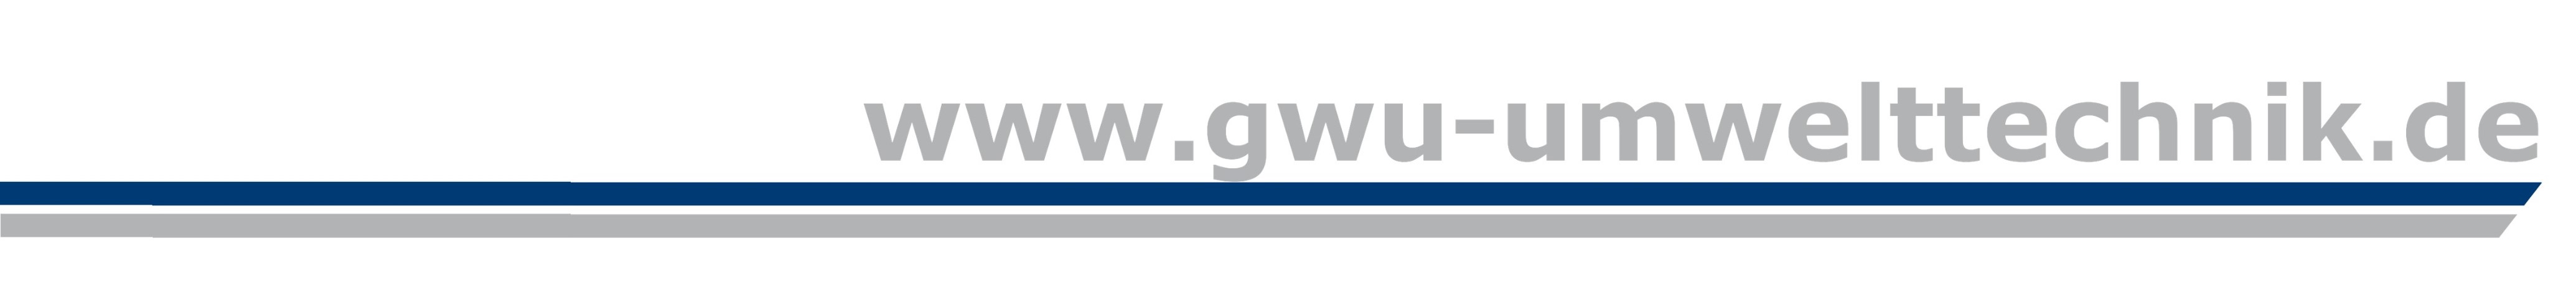 Logo GWU 2020 grau & dunkelgrau